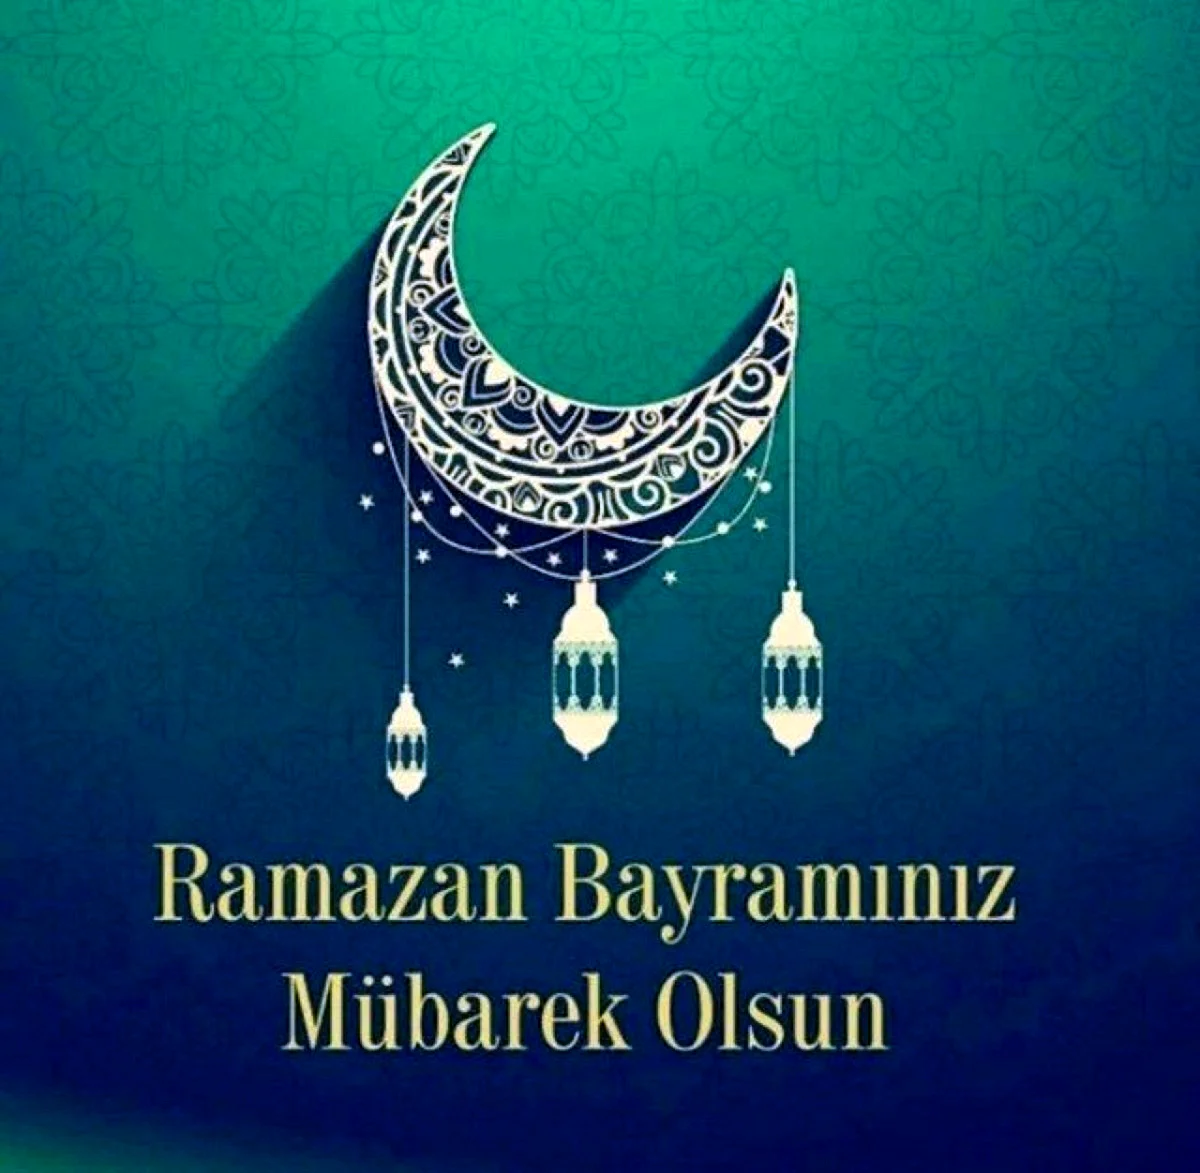 Рамазан байрам на турецком